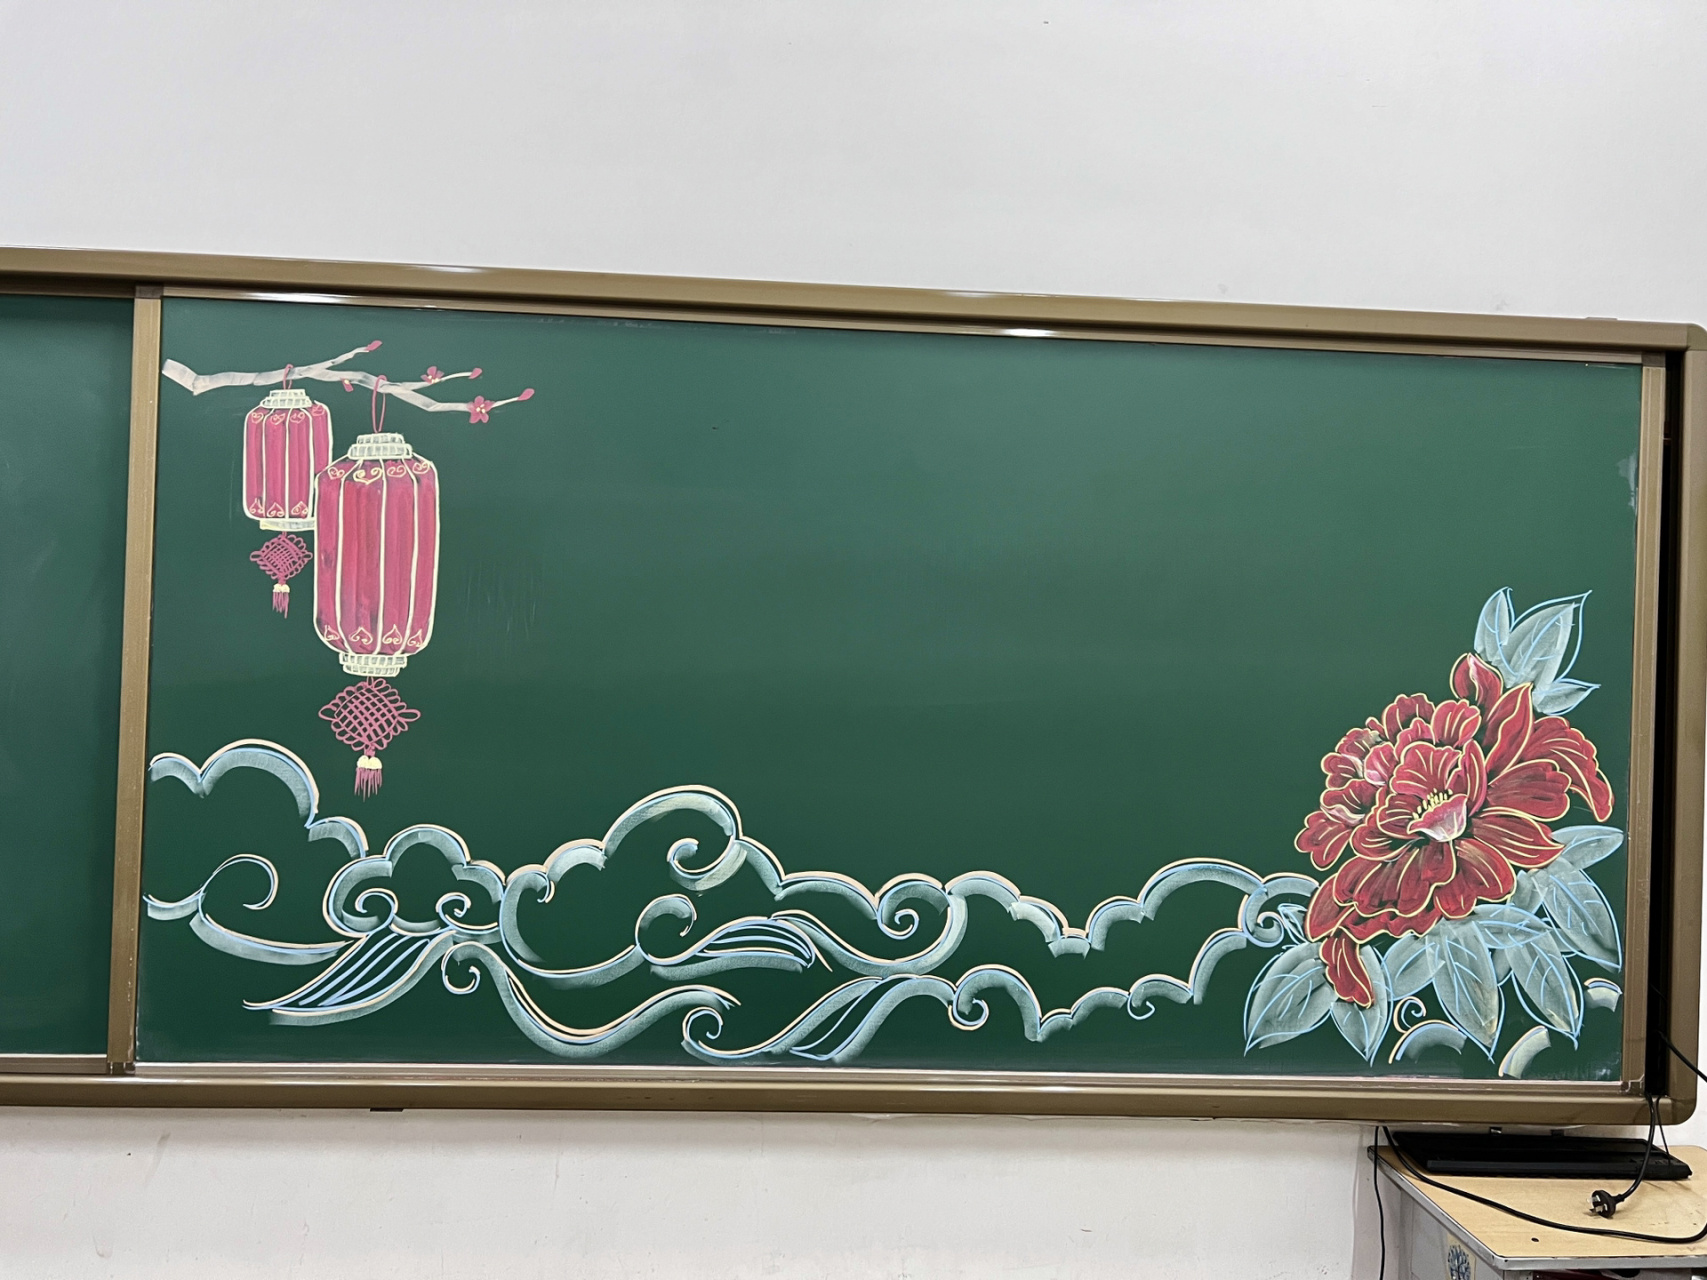 粉笔画牡丹 黑板报边框分享 又是大牡丹～学校老师们的爱